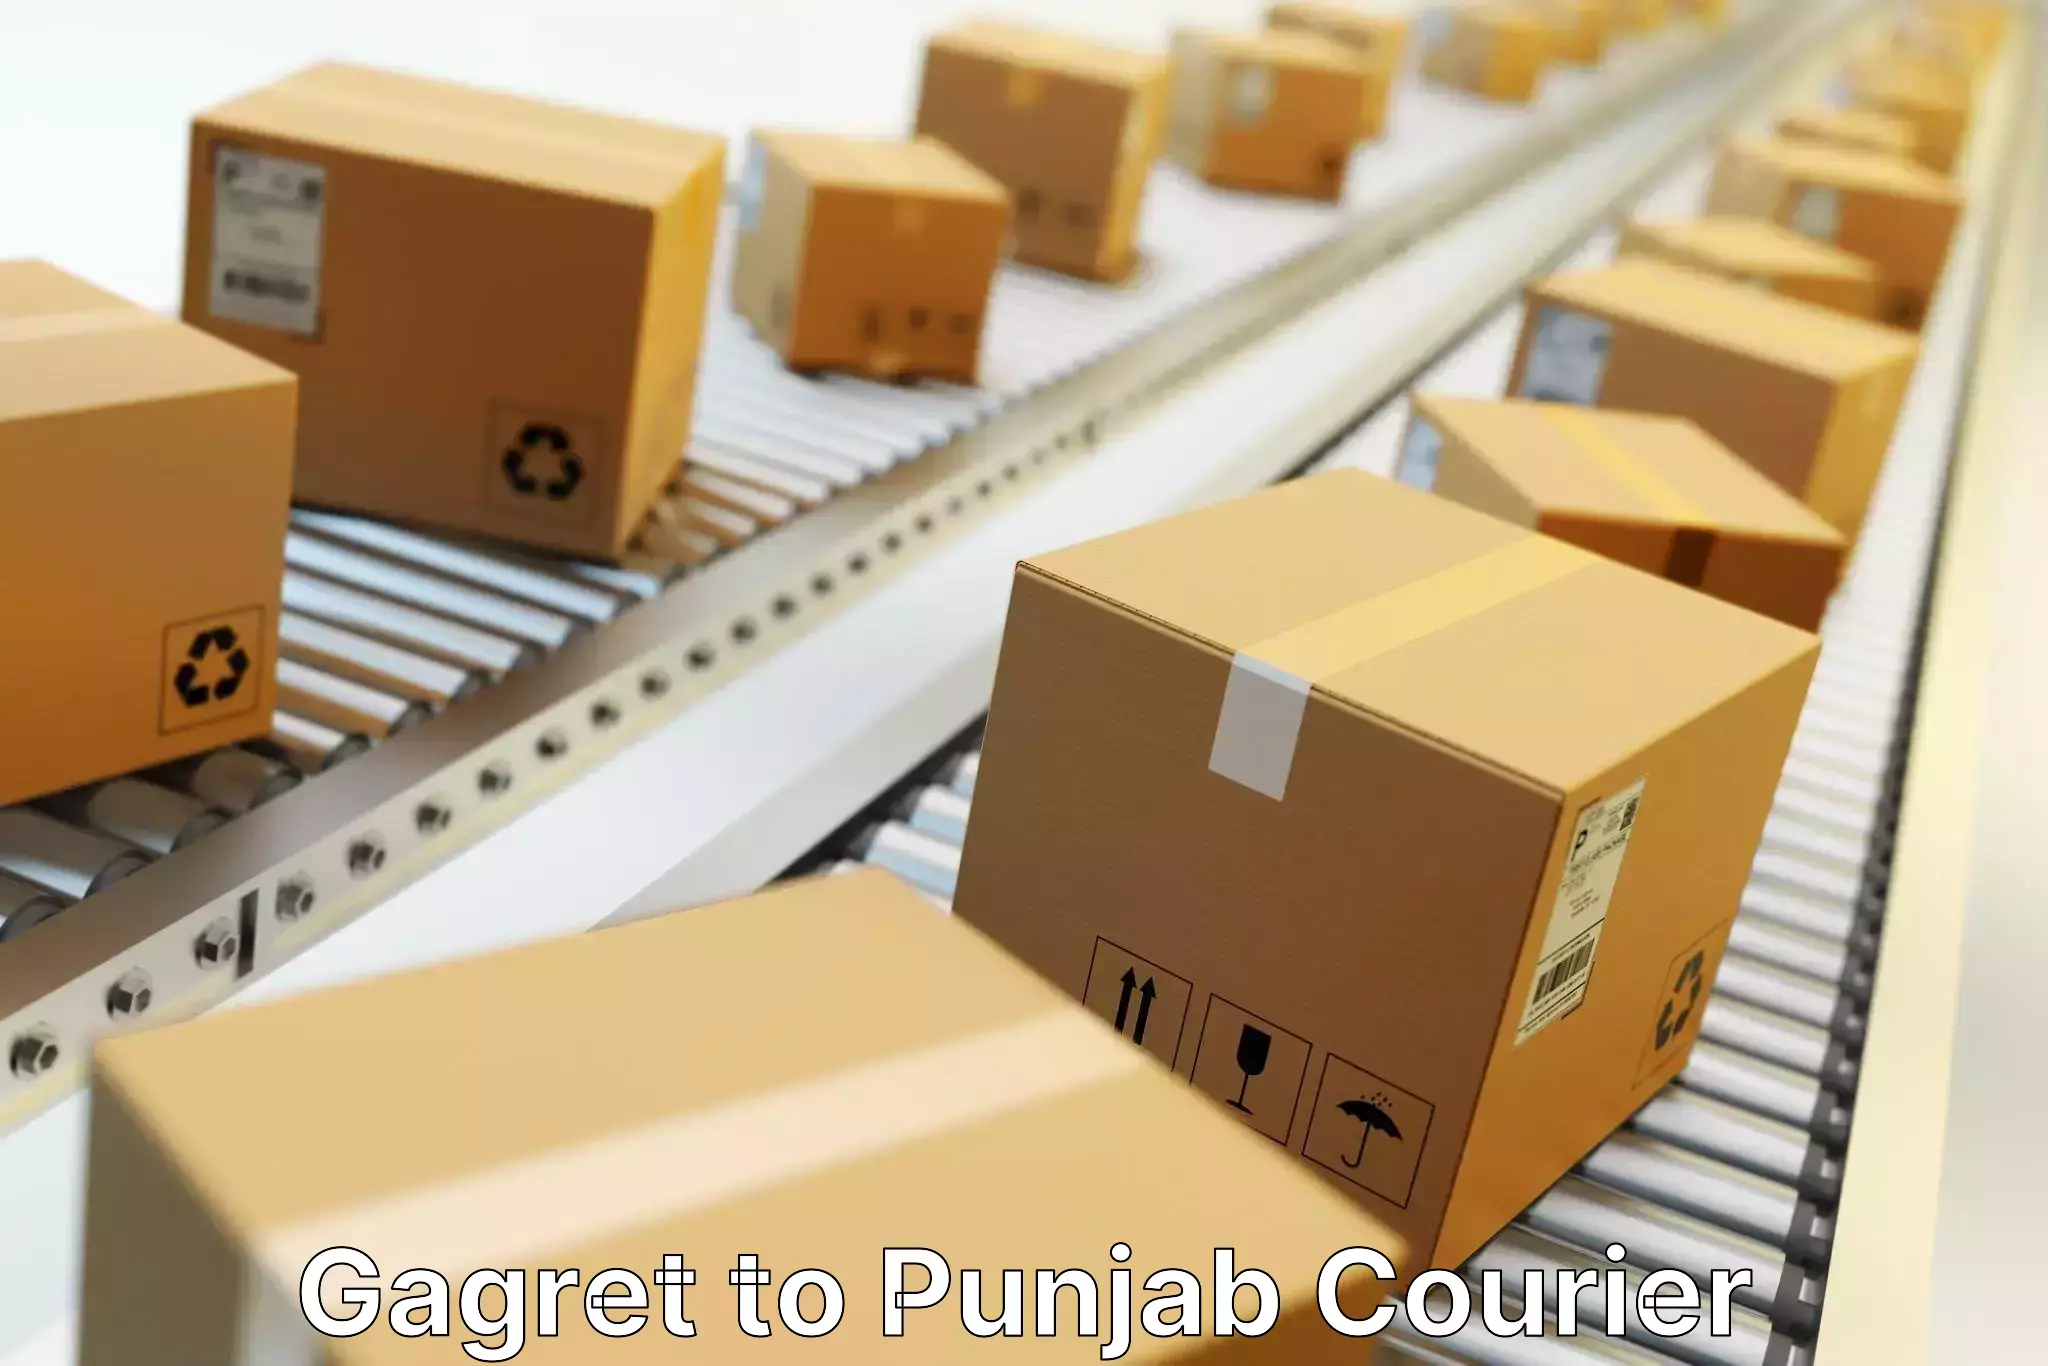 Courier membership Gagret to Punjab